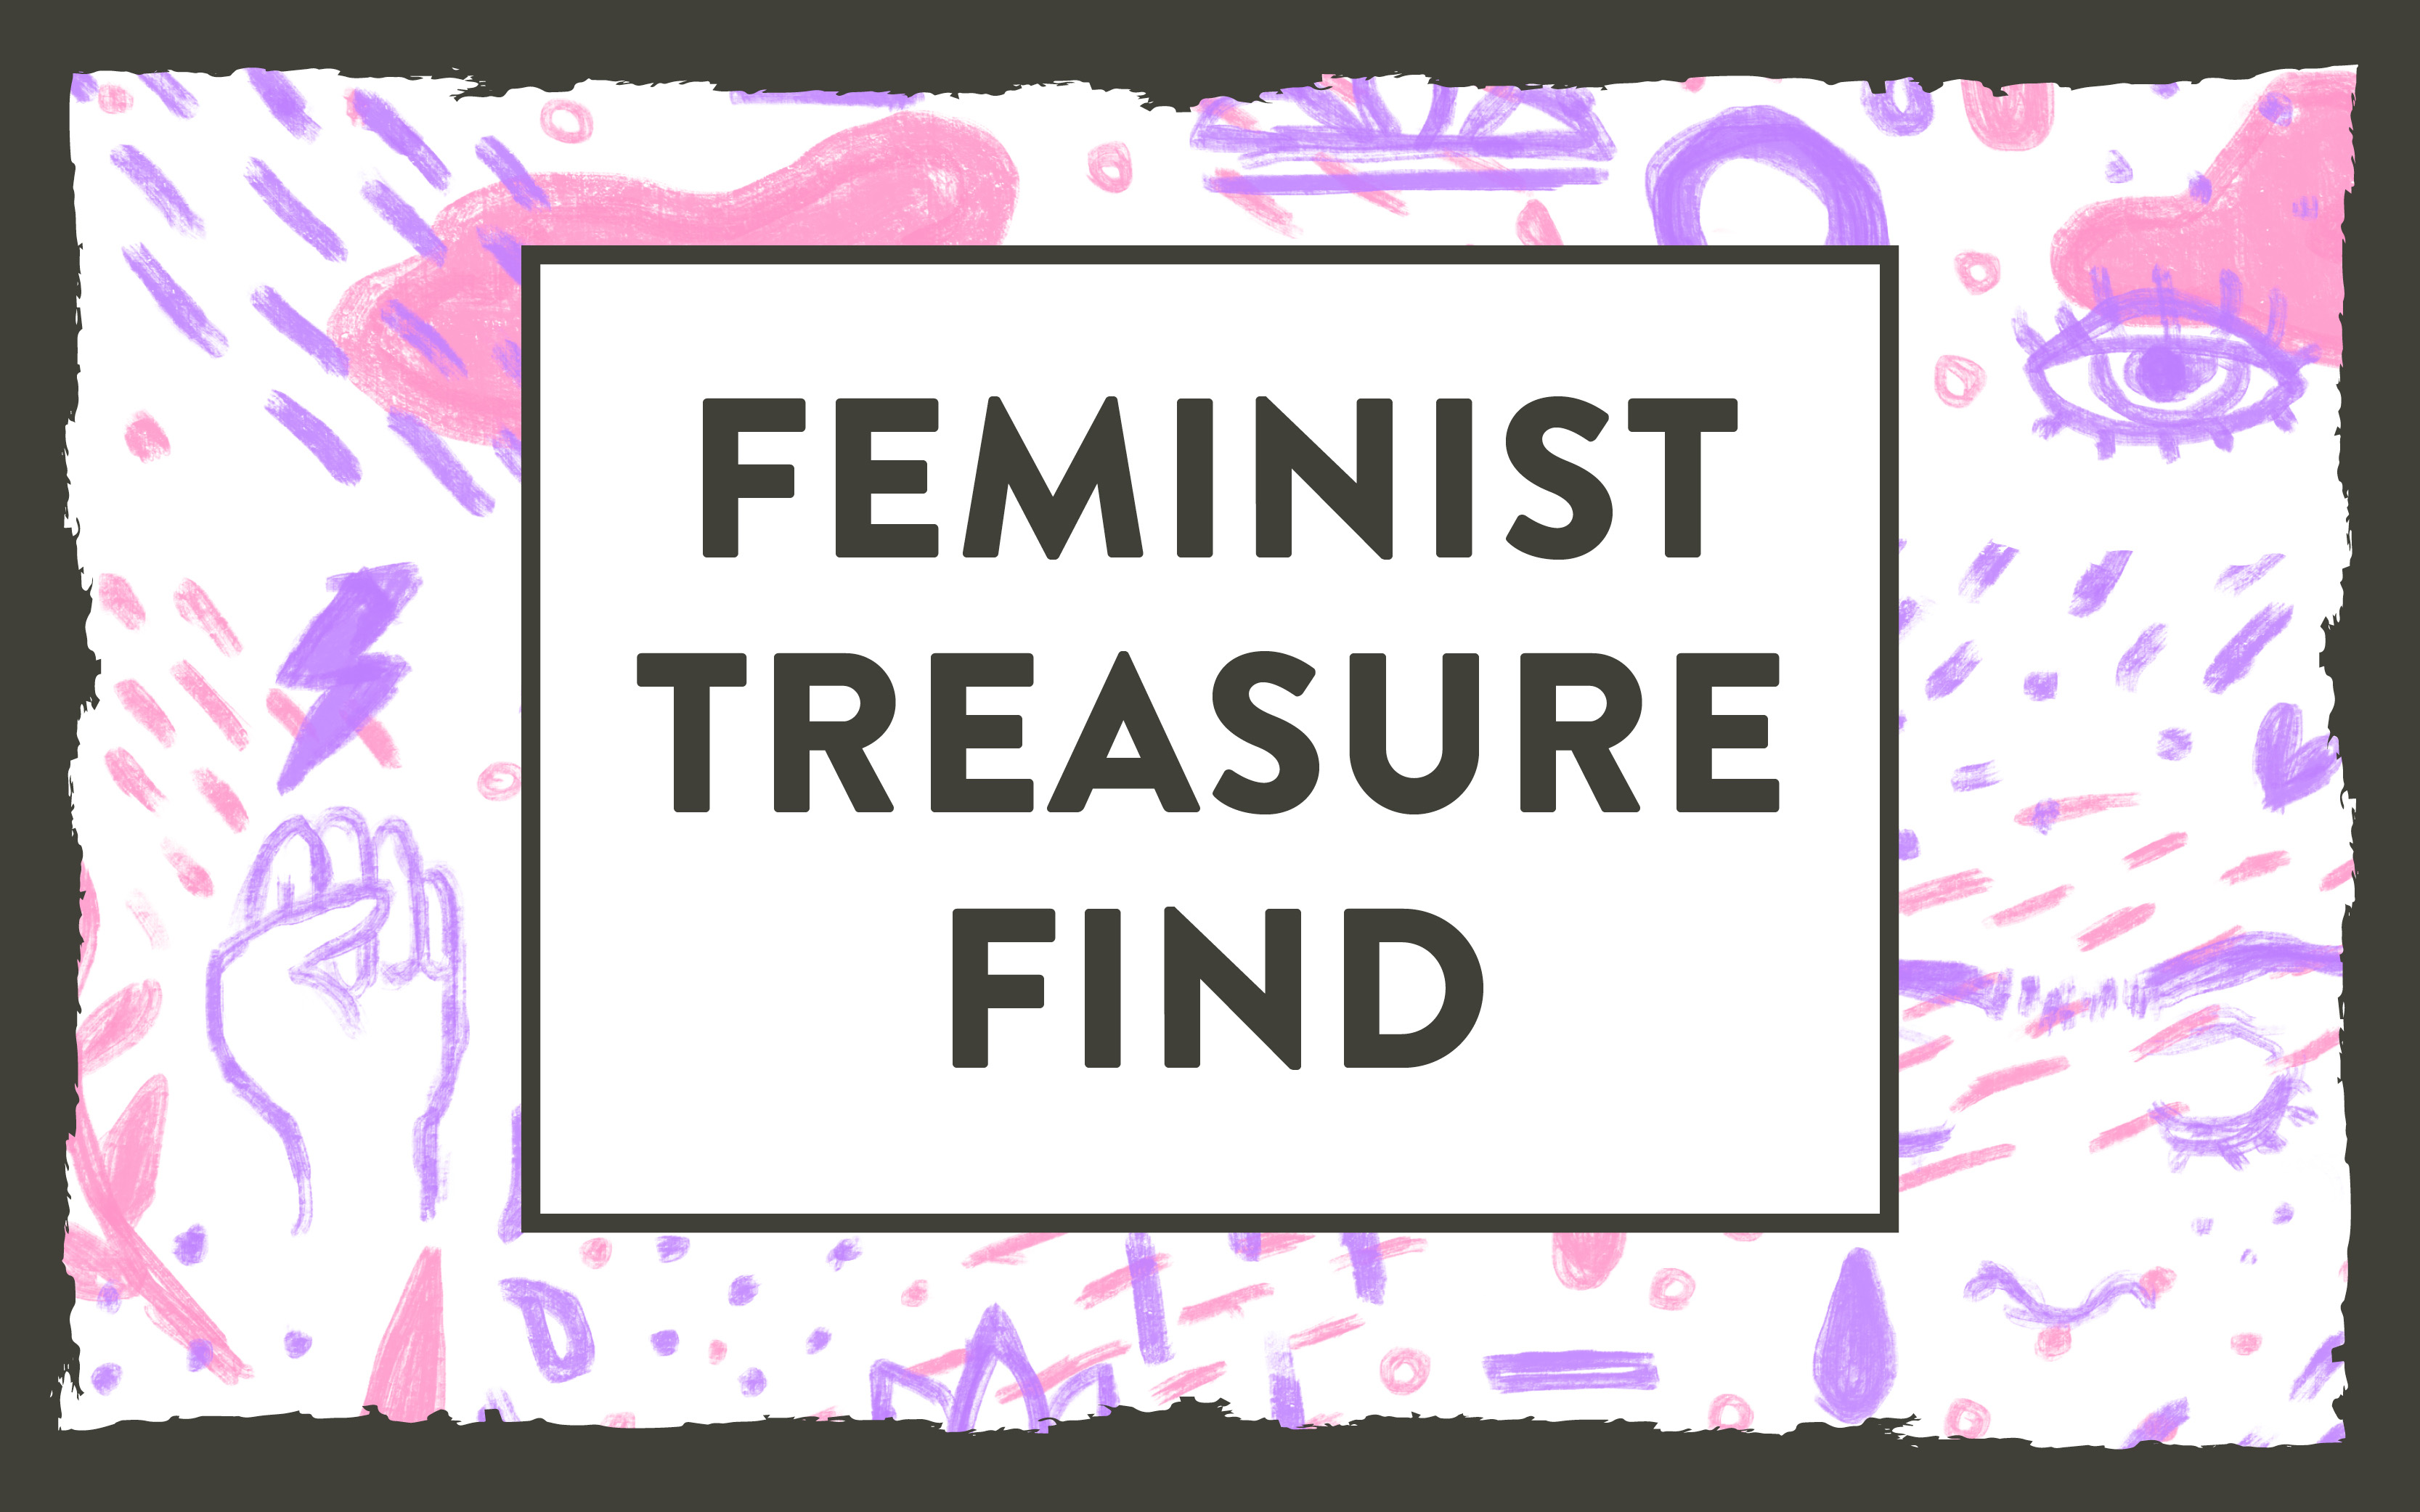 Feminist Treasure Find